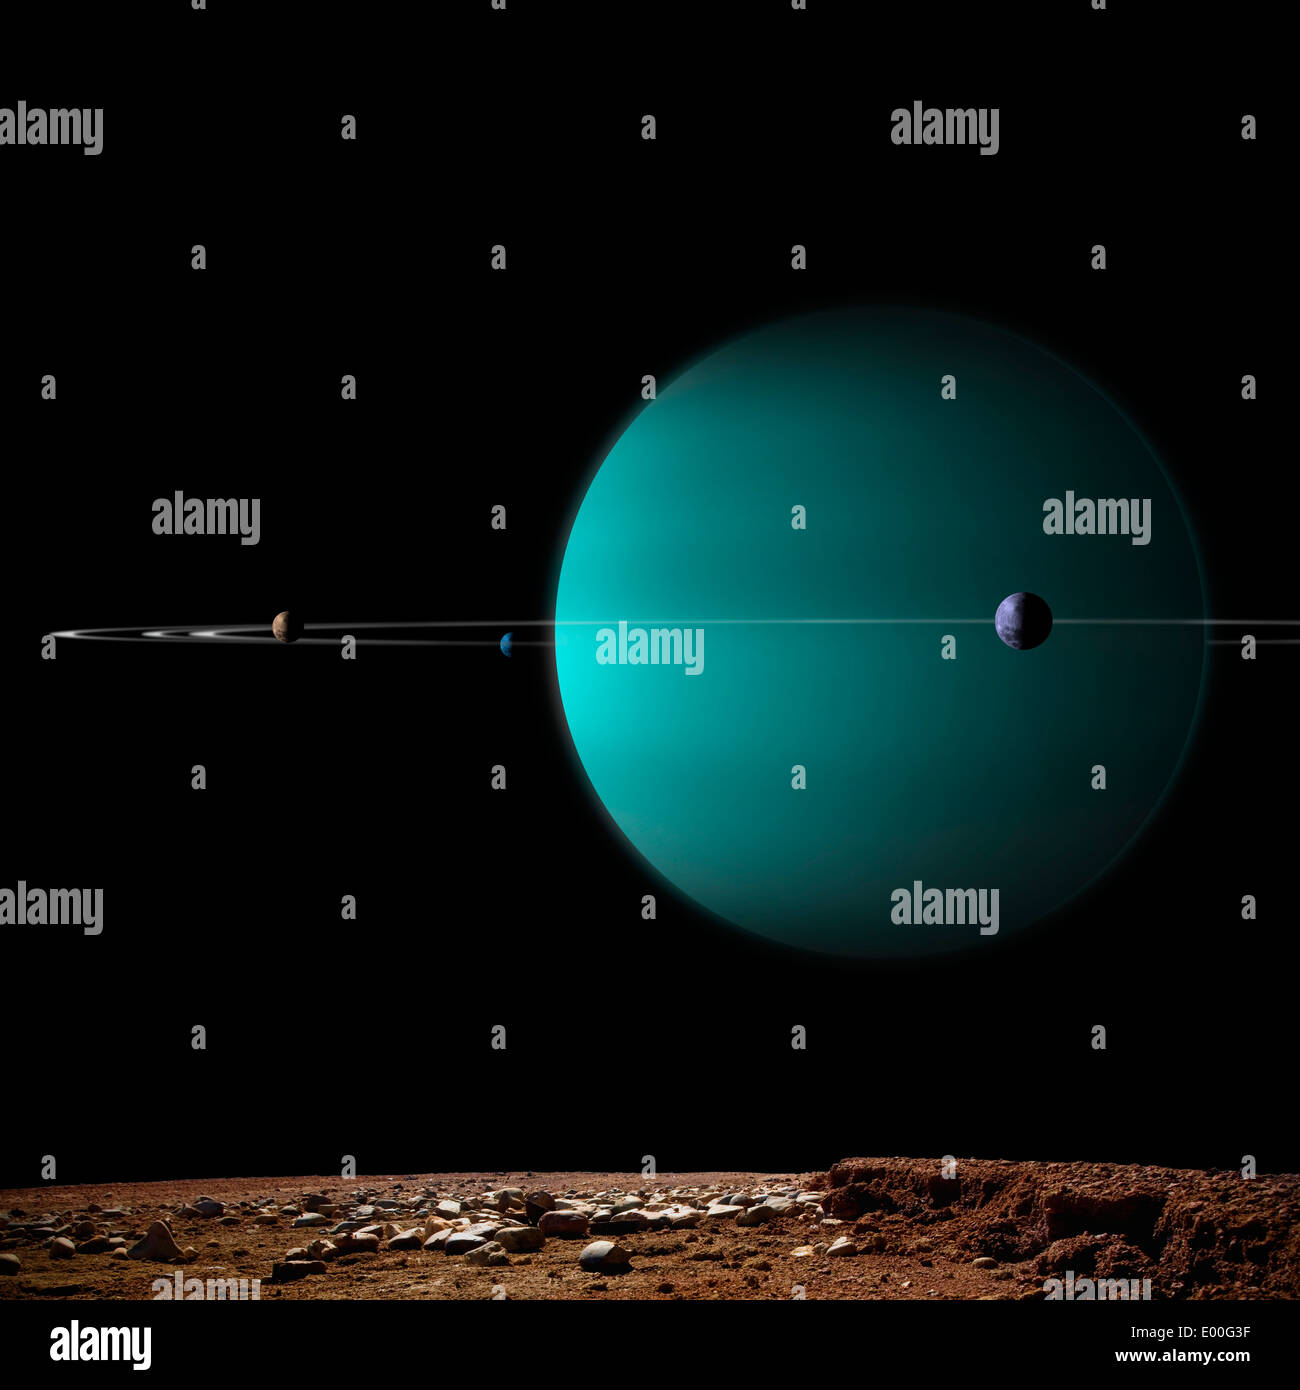 Retrato del artista de un planeta de gas gigante anillado rodeado por sus lunas. Foto de stock